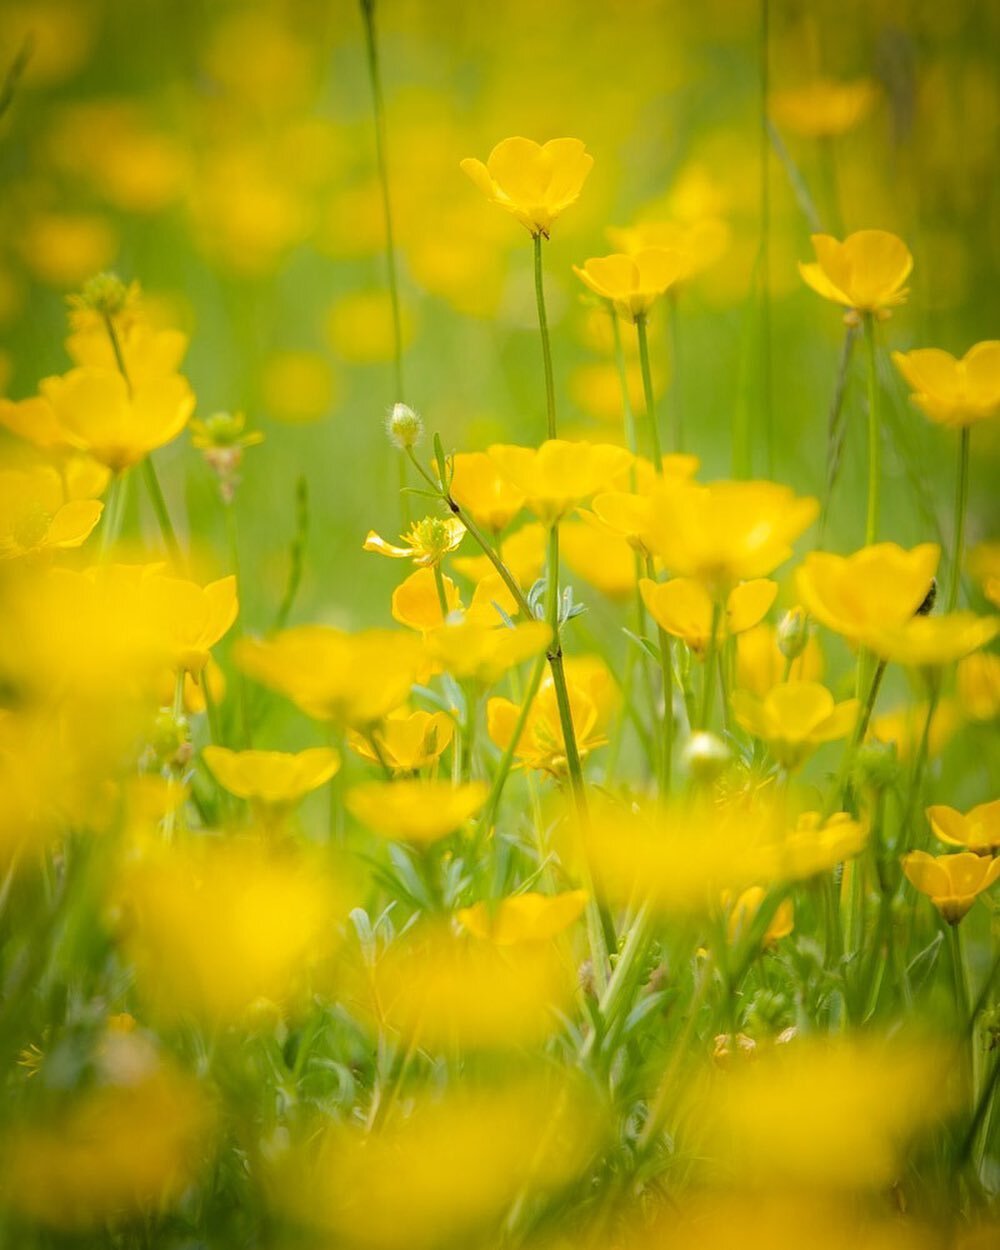 Buttercup Dreams ☀️☀️☀️ #summertime #buttercups #summerflowers #flowerpower